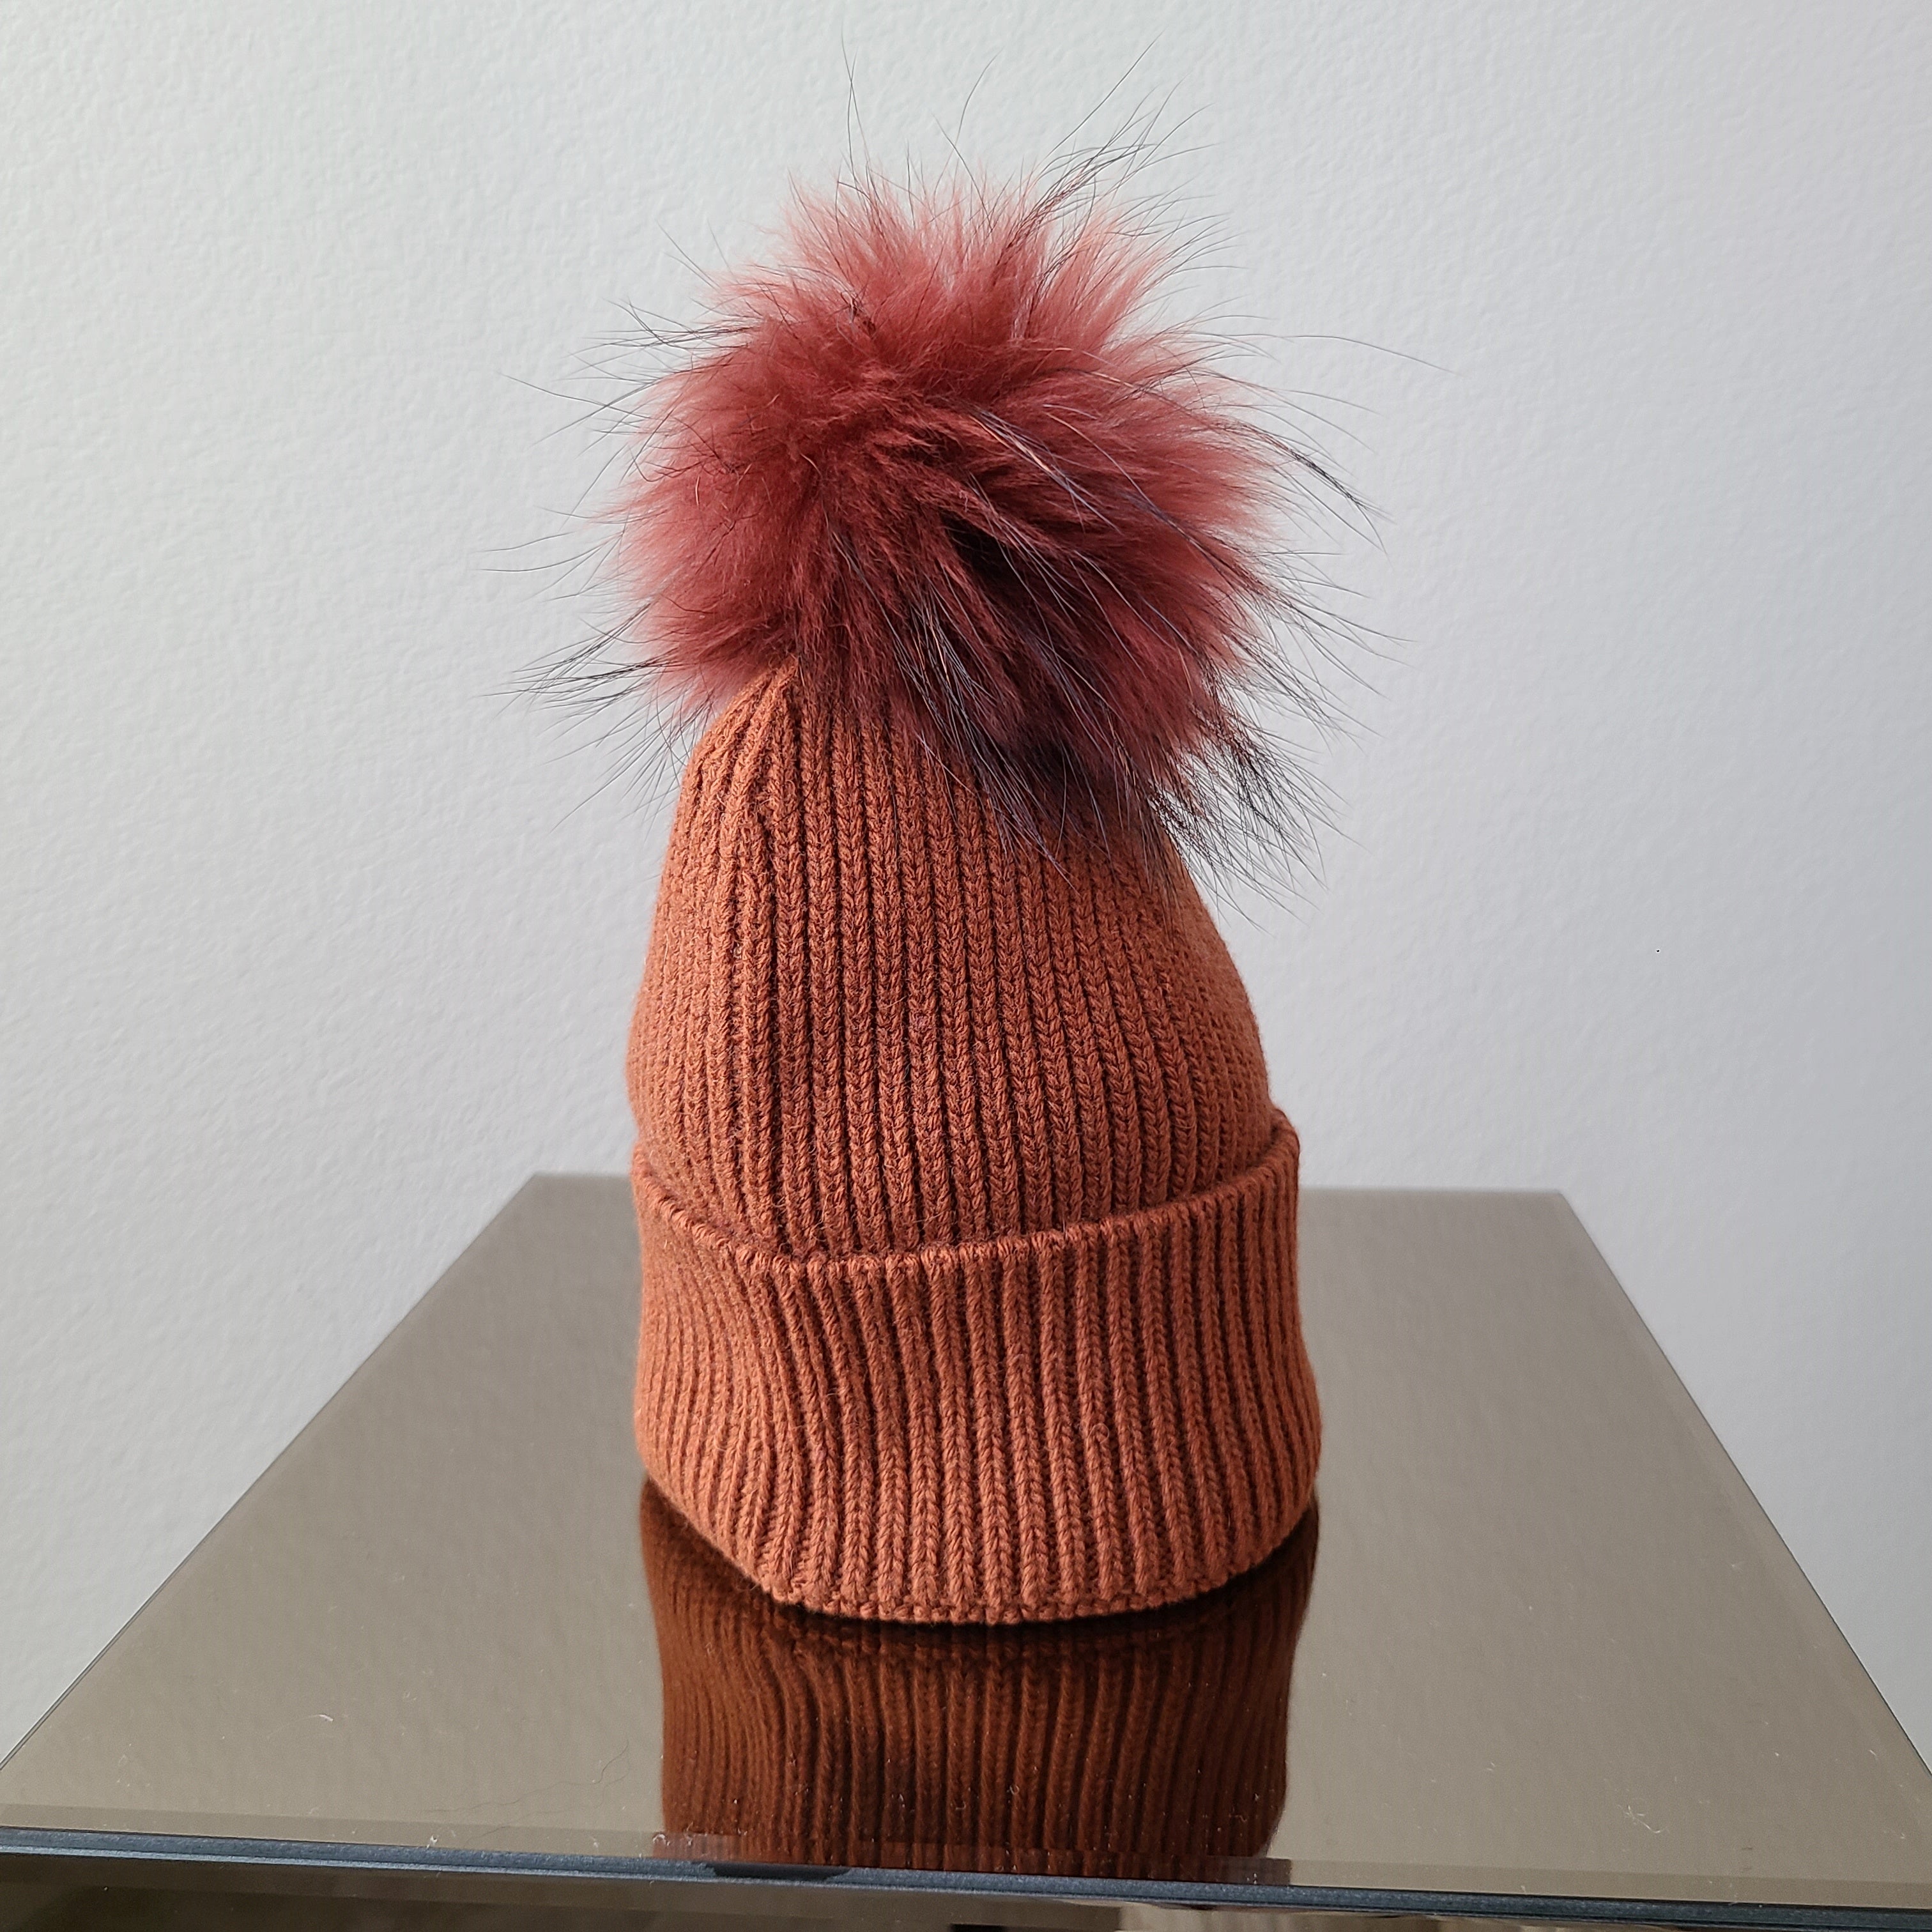 Italy made classic Knit pom pom beanie hat